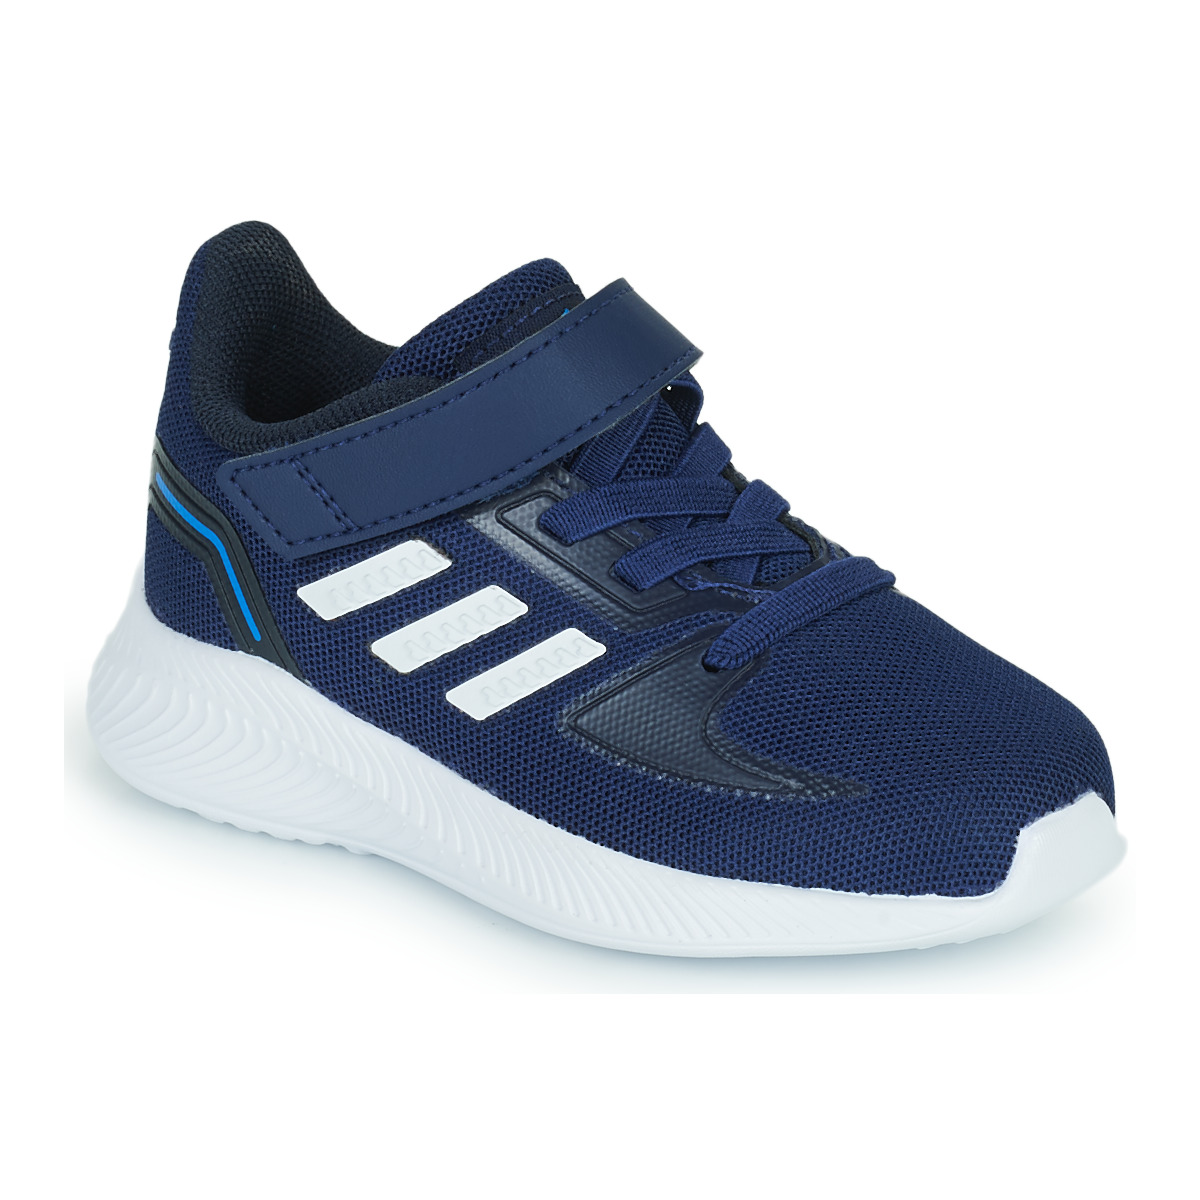 鞋子 儿童 跑鞋 adidas Performance 阿迪达斯运动训练 RUNFALCON 2.0 I 海蓝色